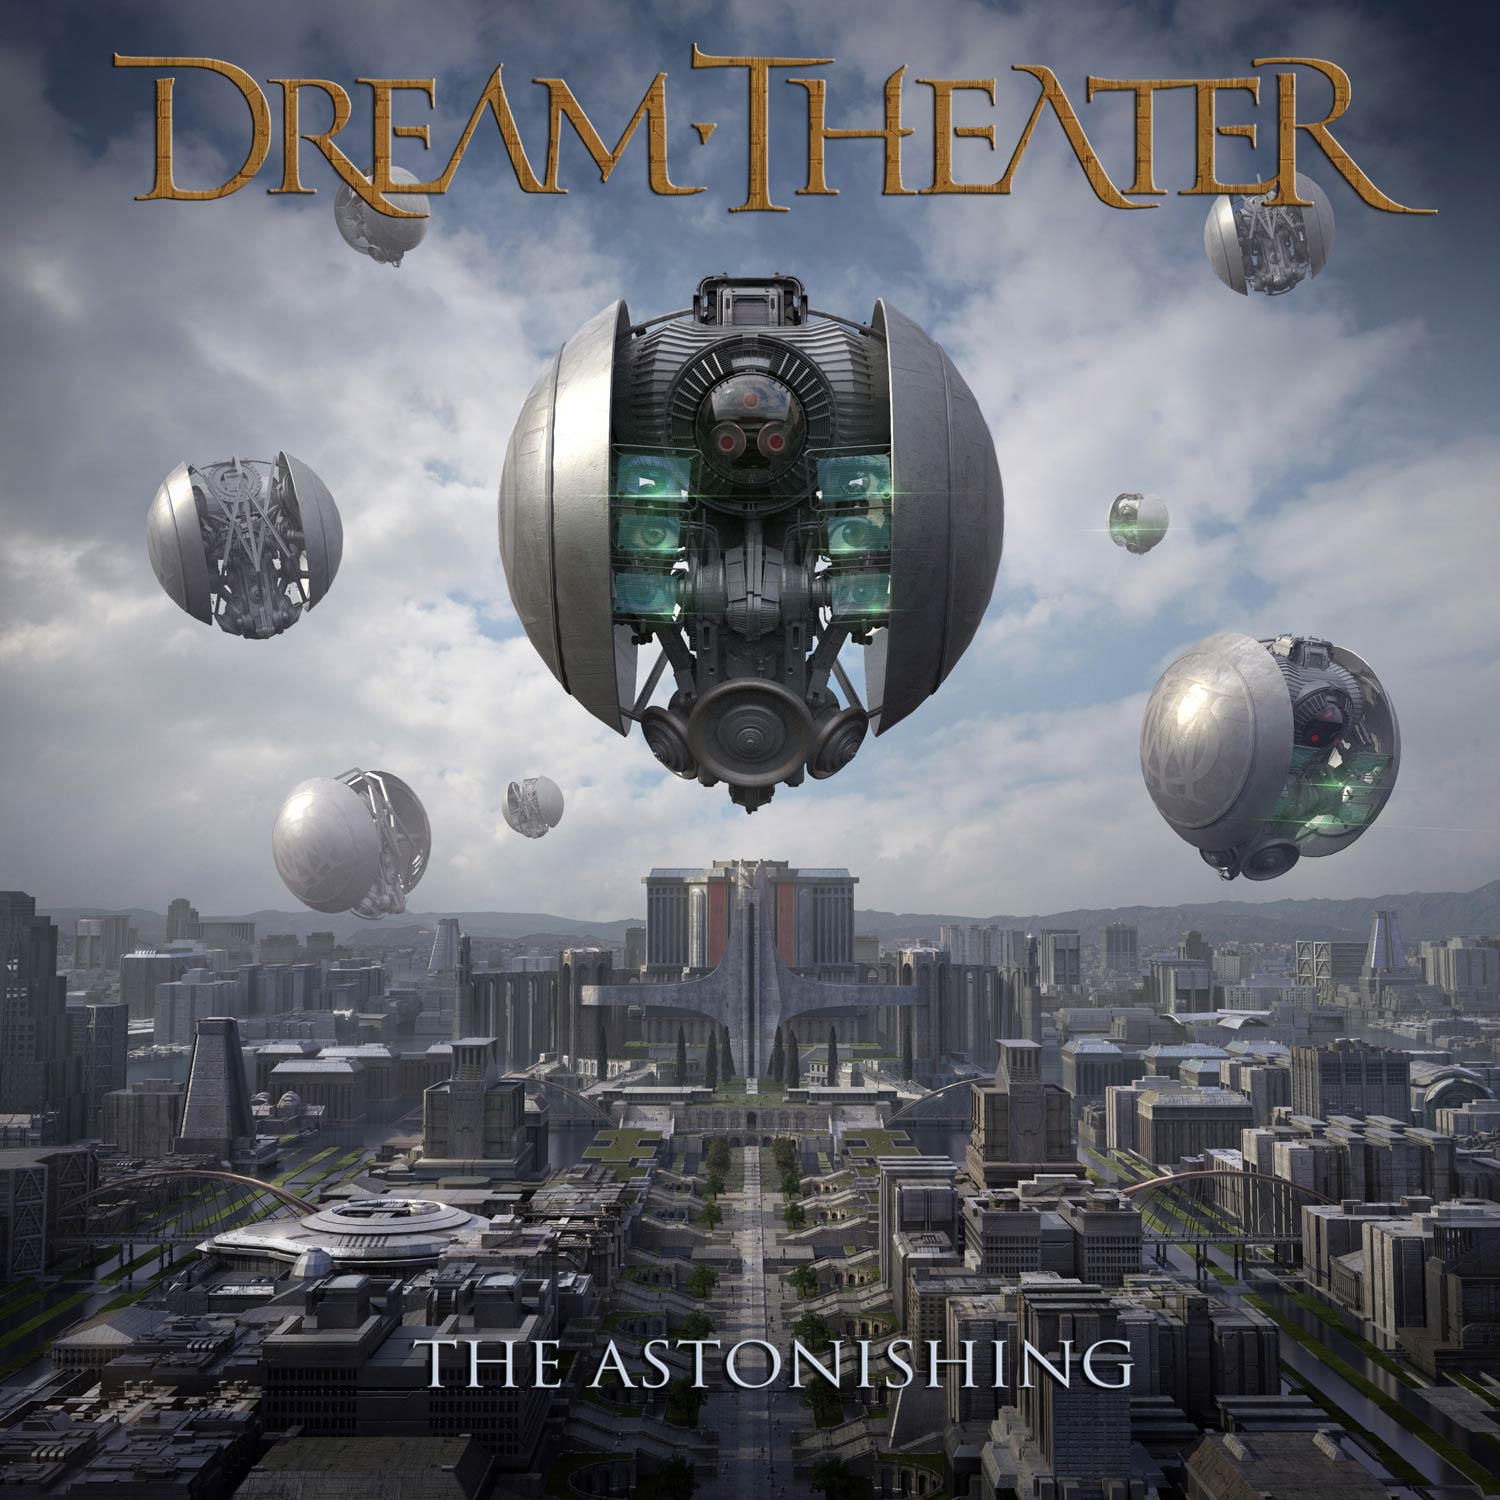 Dream Theater: The astonishing, la portada del disco